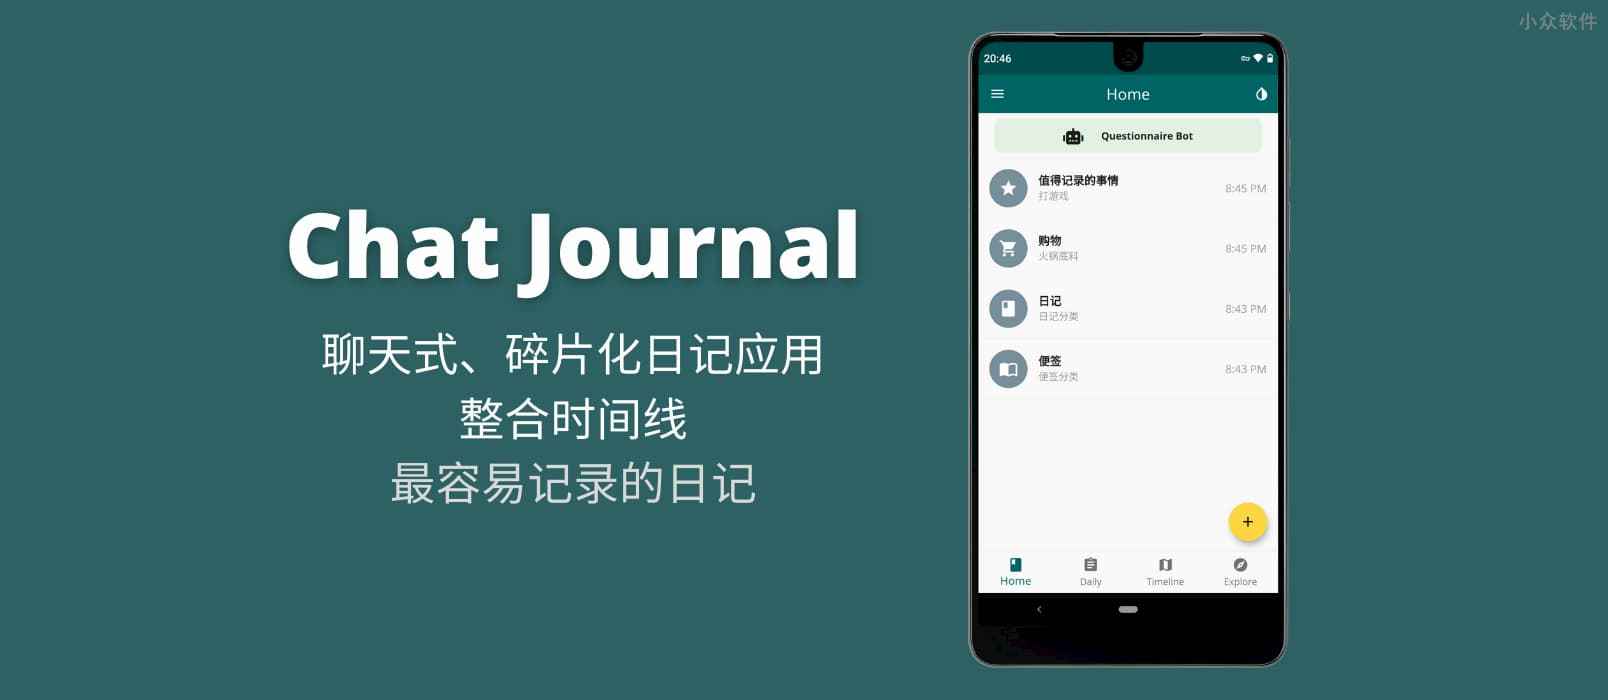 Chat Journal - 聊天式、碎片化日记应用，整合时间线[Android]